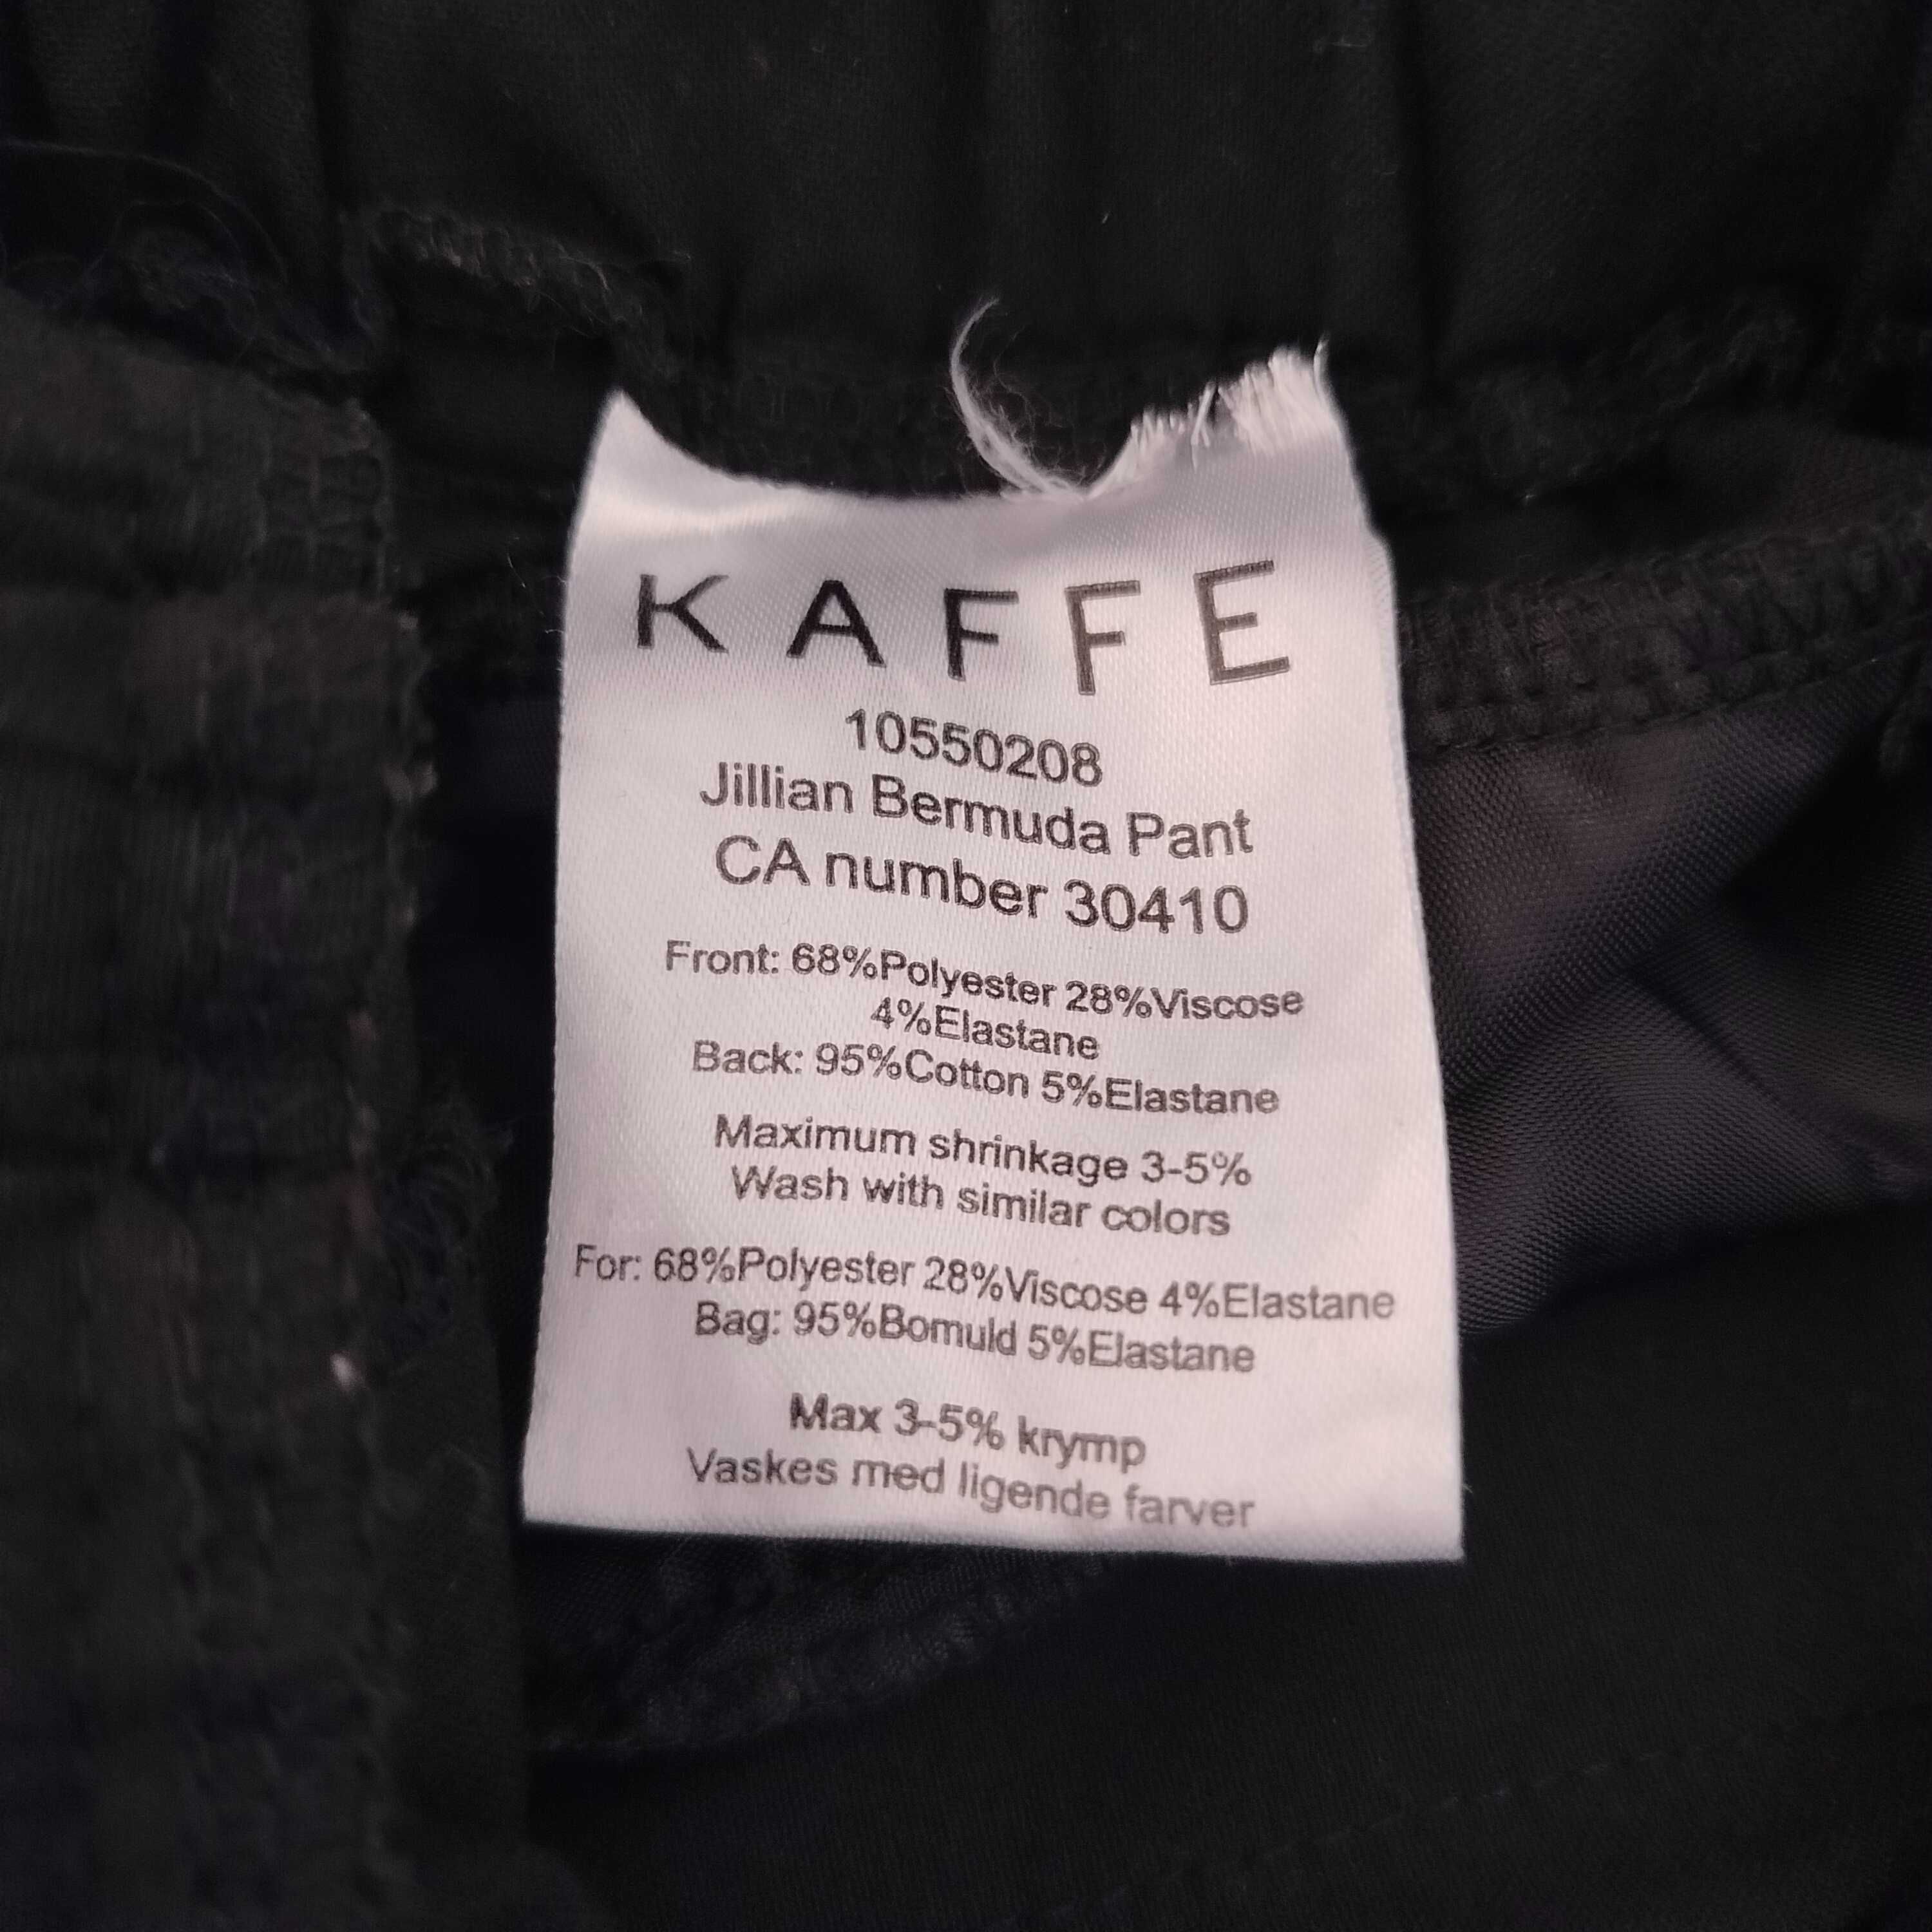 Spodnie krótkie damskie firmy Kaffe rozm. 32